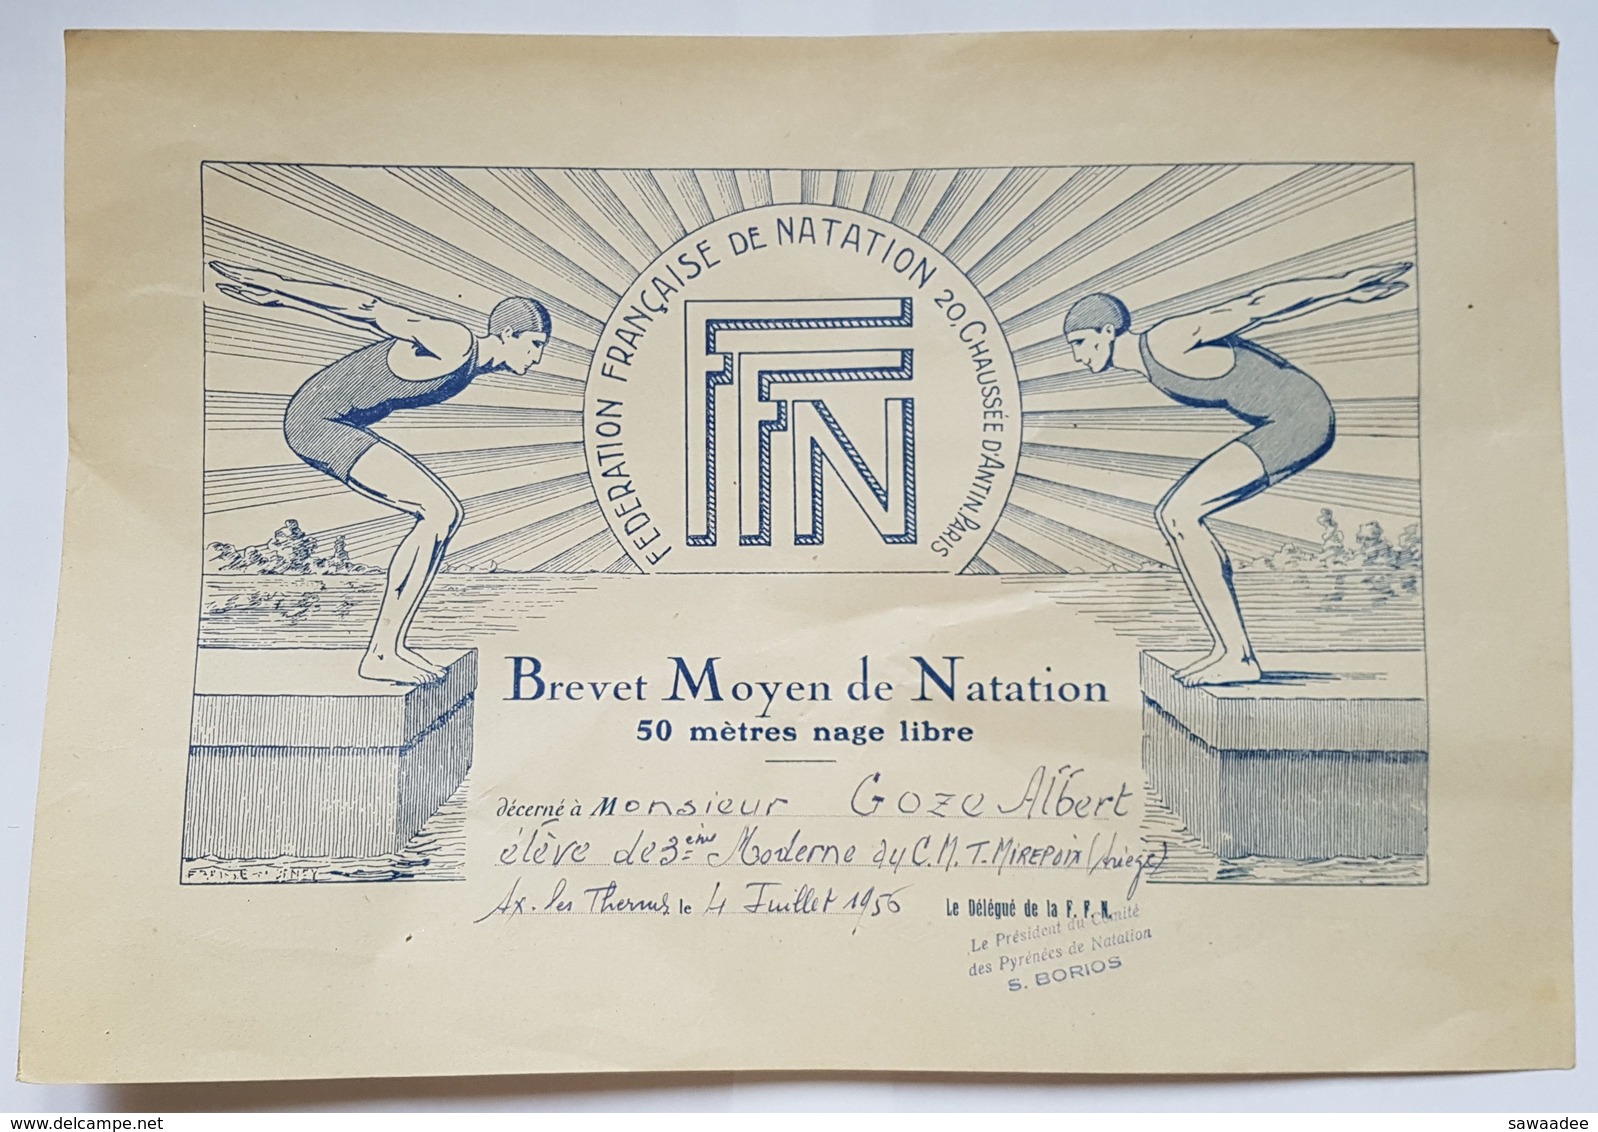 BREVET MOYEN DE NATATION - 50 METRE NAGE LIBRE - FFN - AX LES THERMES - ARIEGE - 1956 - Diplômes & Bulletins Scolaires